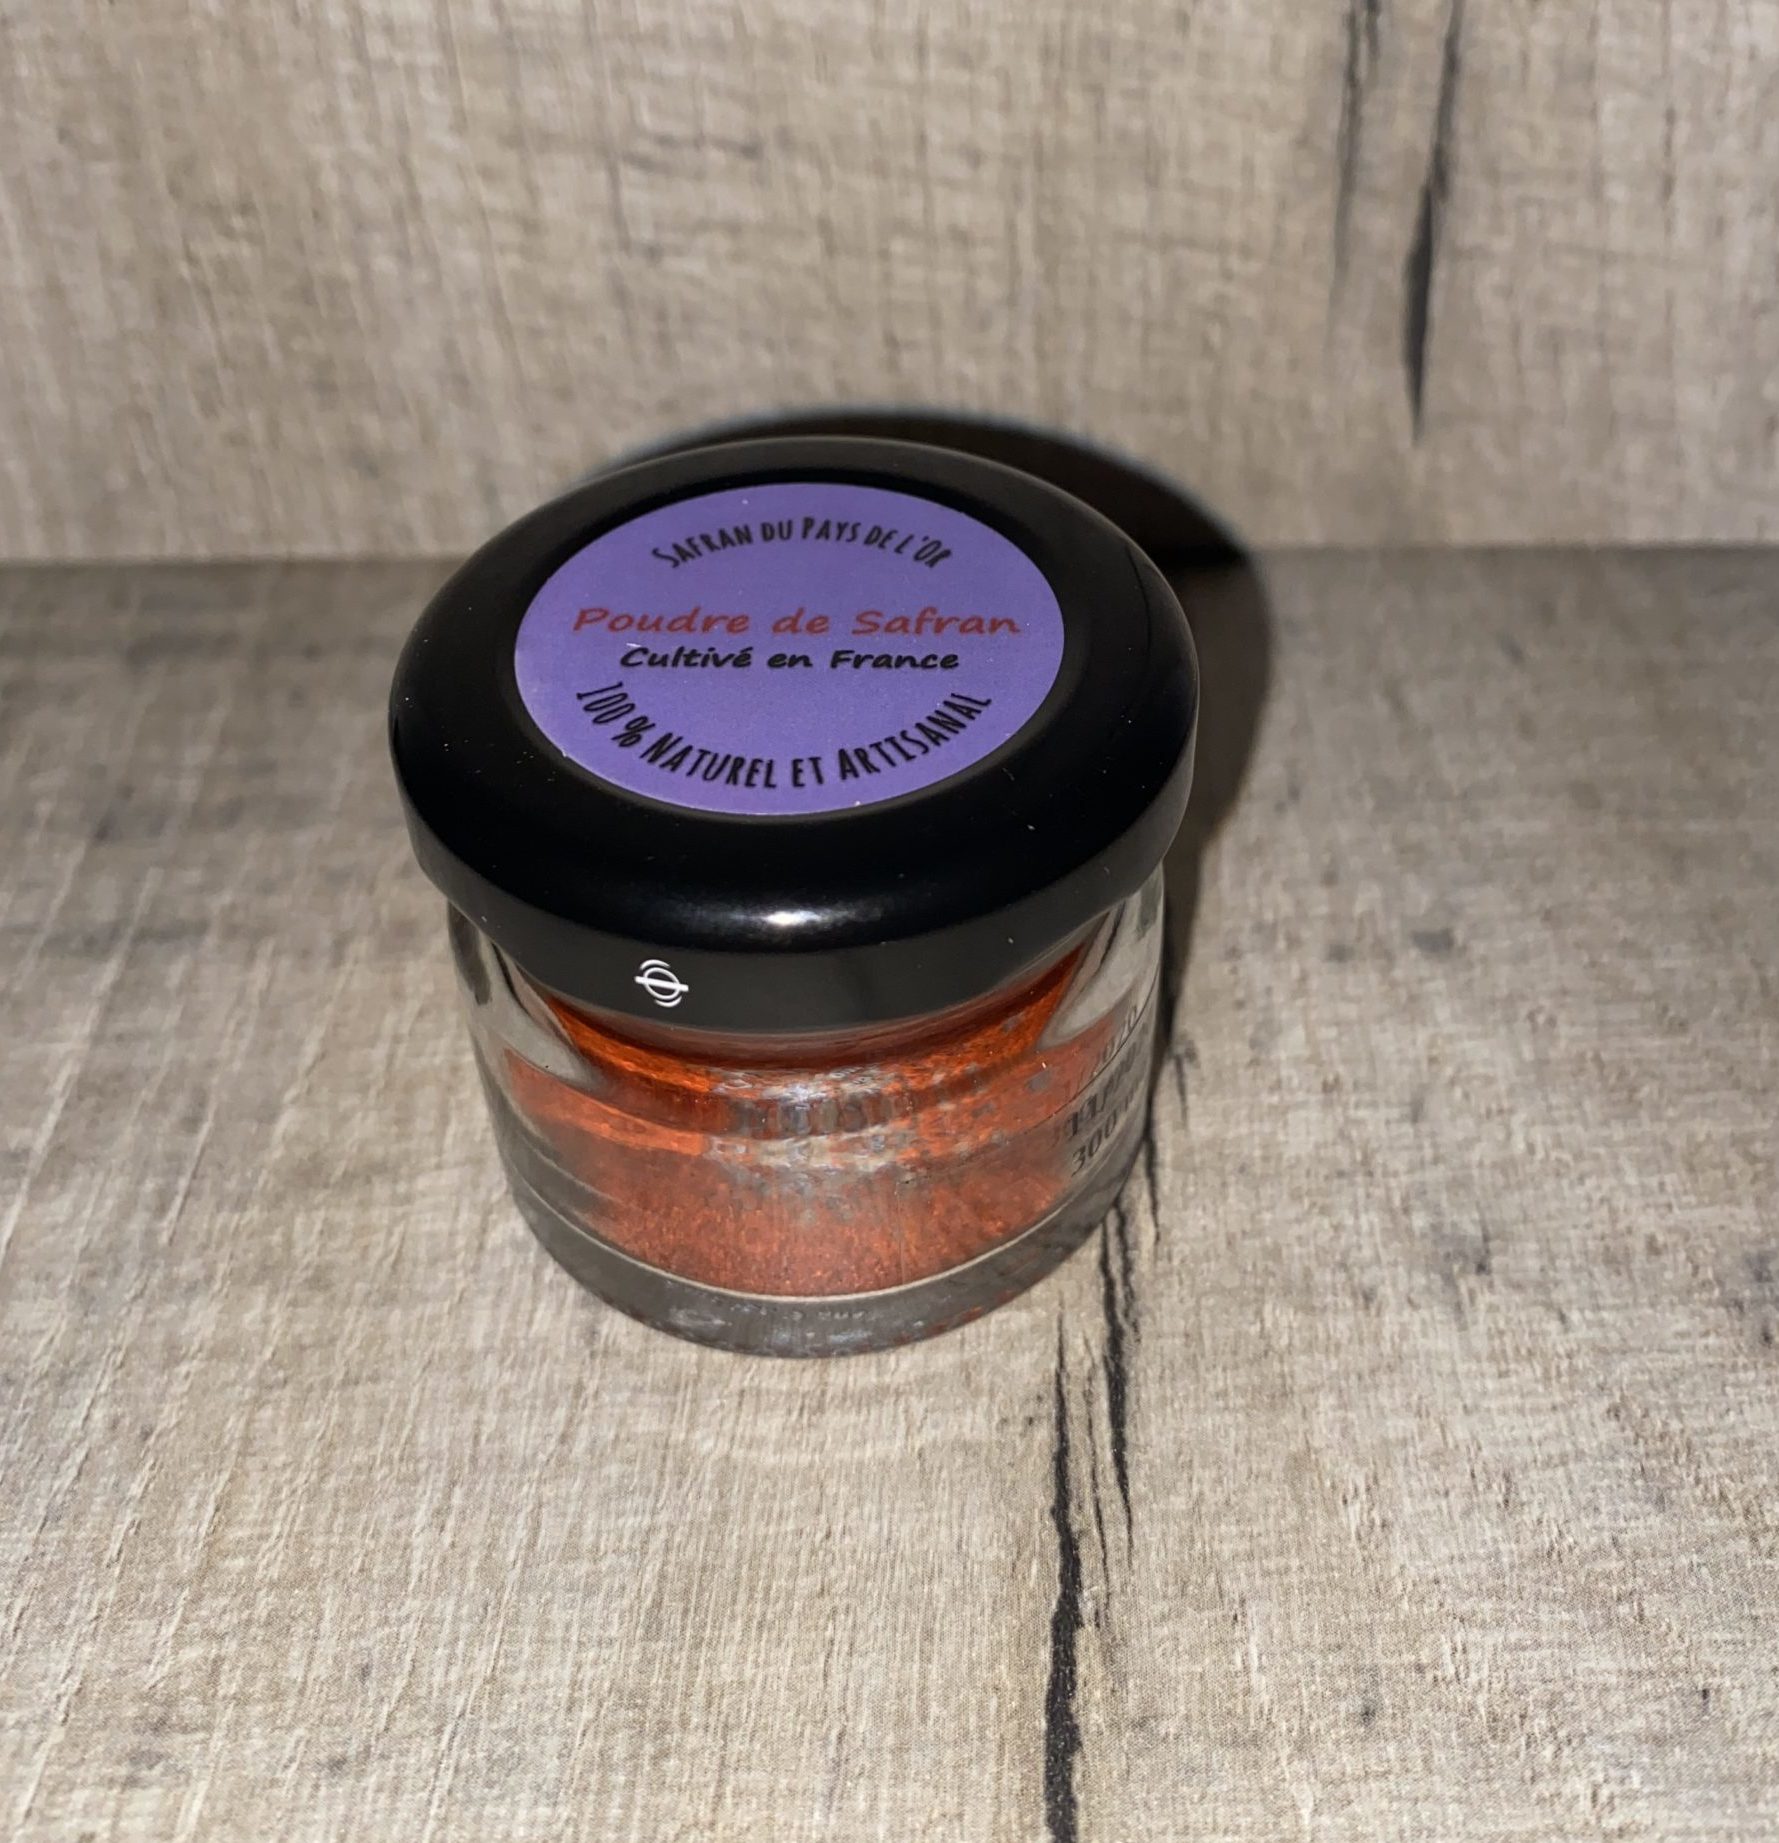 3g meilleur safran poudre; Une sélection de safran de qualité royale de  monde; 100% pur tous authentiques safran rouge (3*1g)